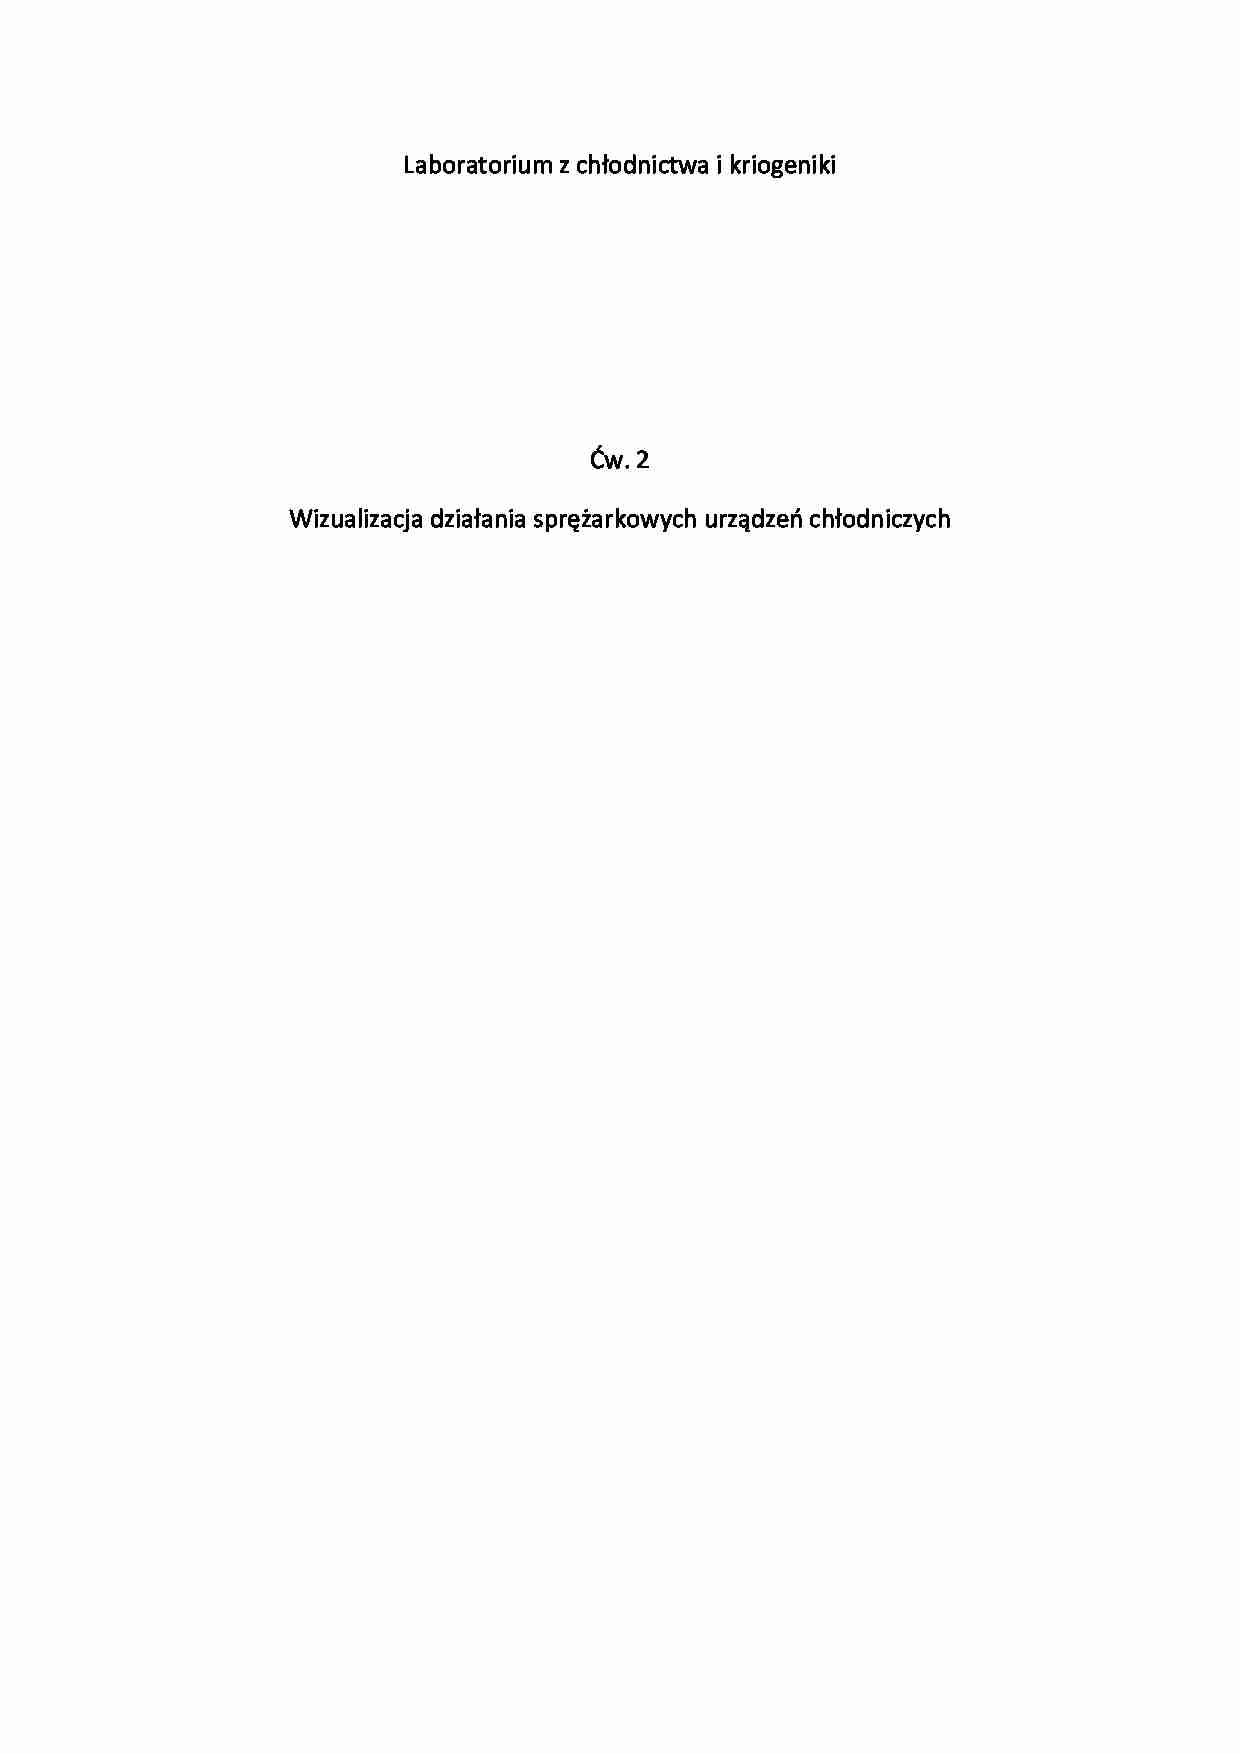 Wizualizacja działania sprężarkowych urządzeń chłodniczych-sprawozdanie - strona 1